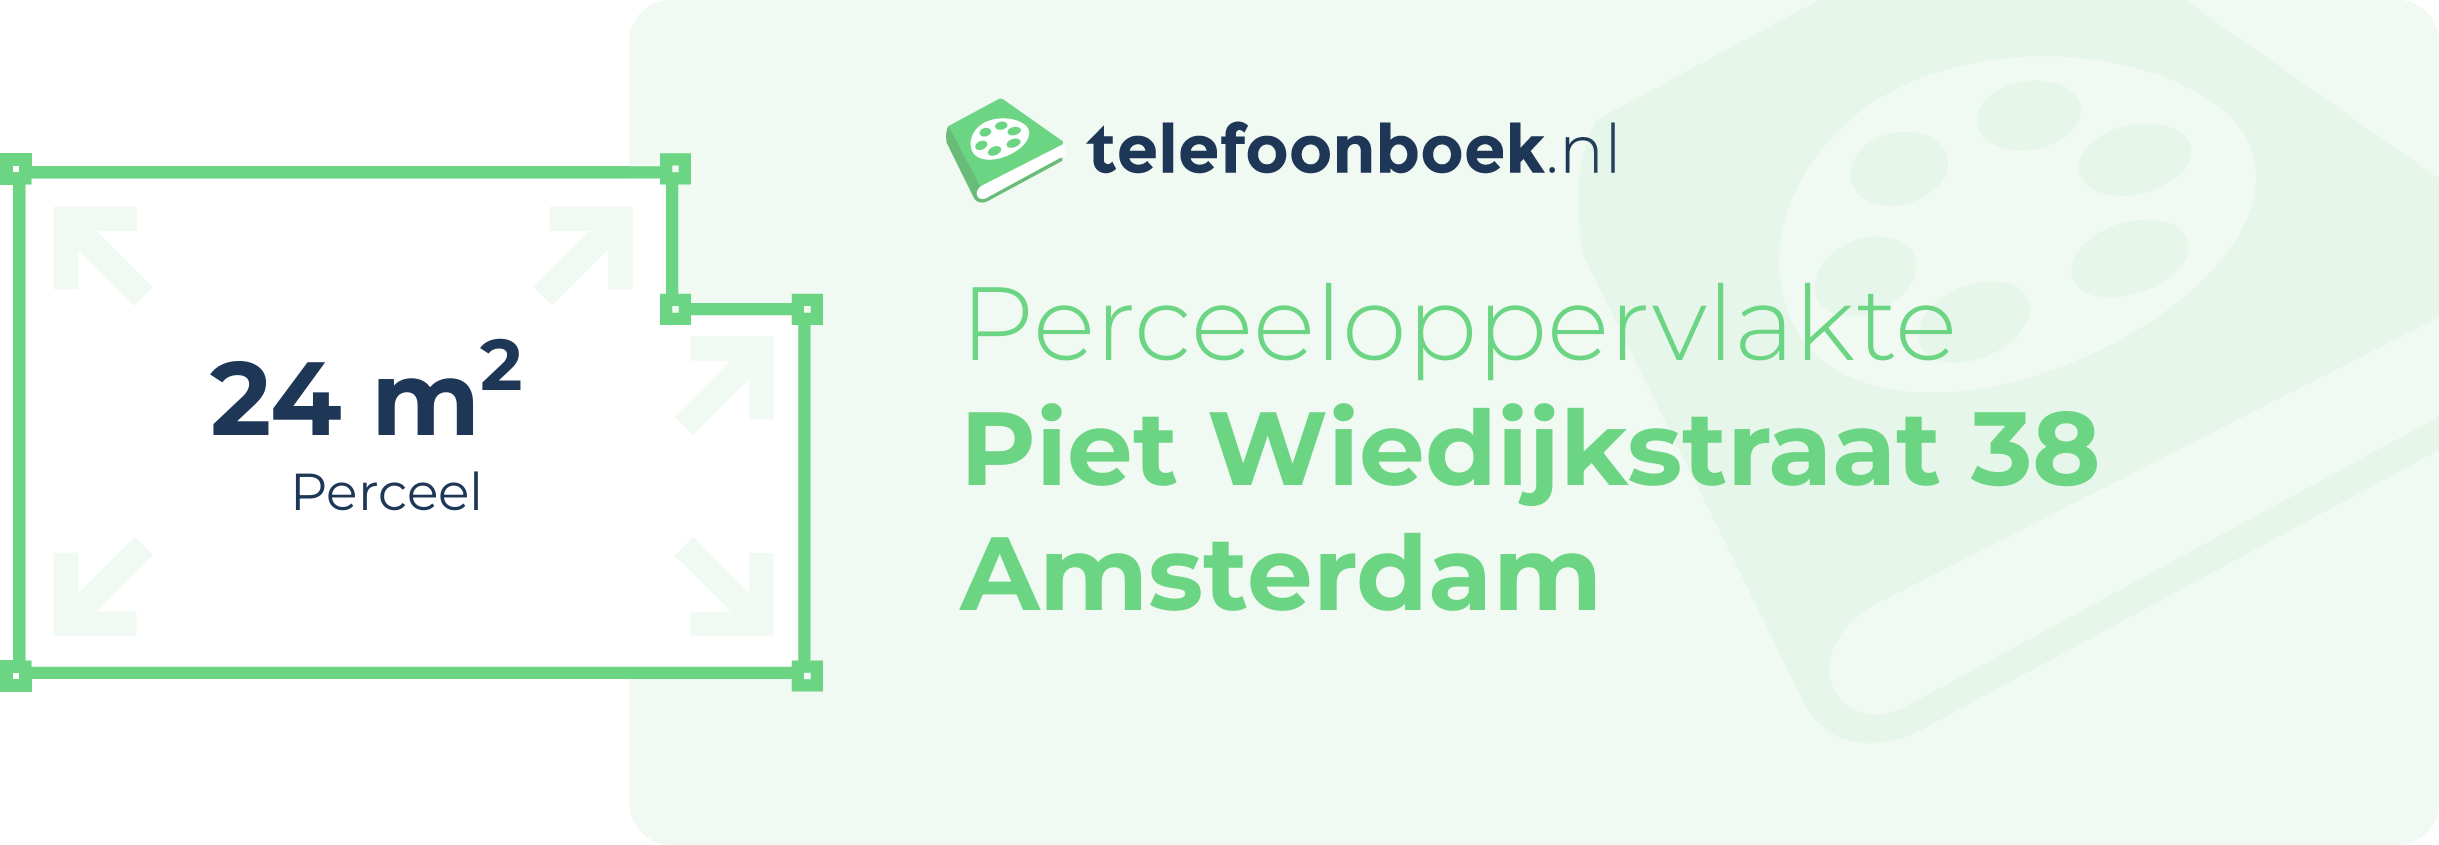 Perceeloppervlakte Piet Wiedijkstraat 38 Amsterdam